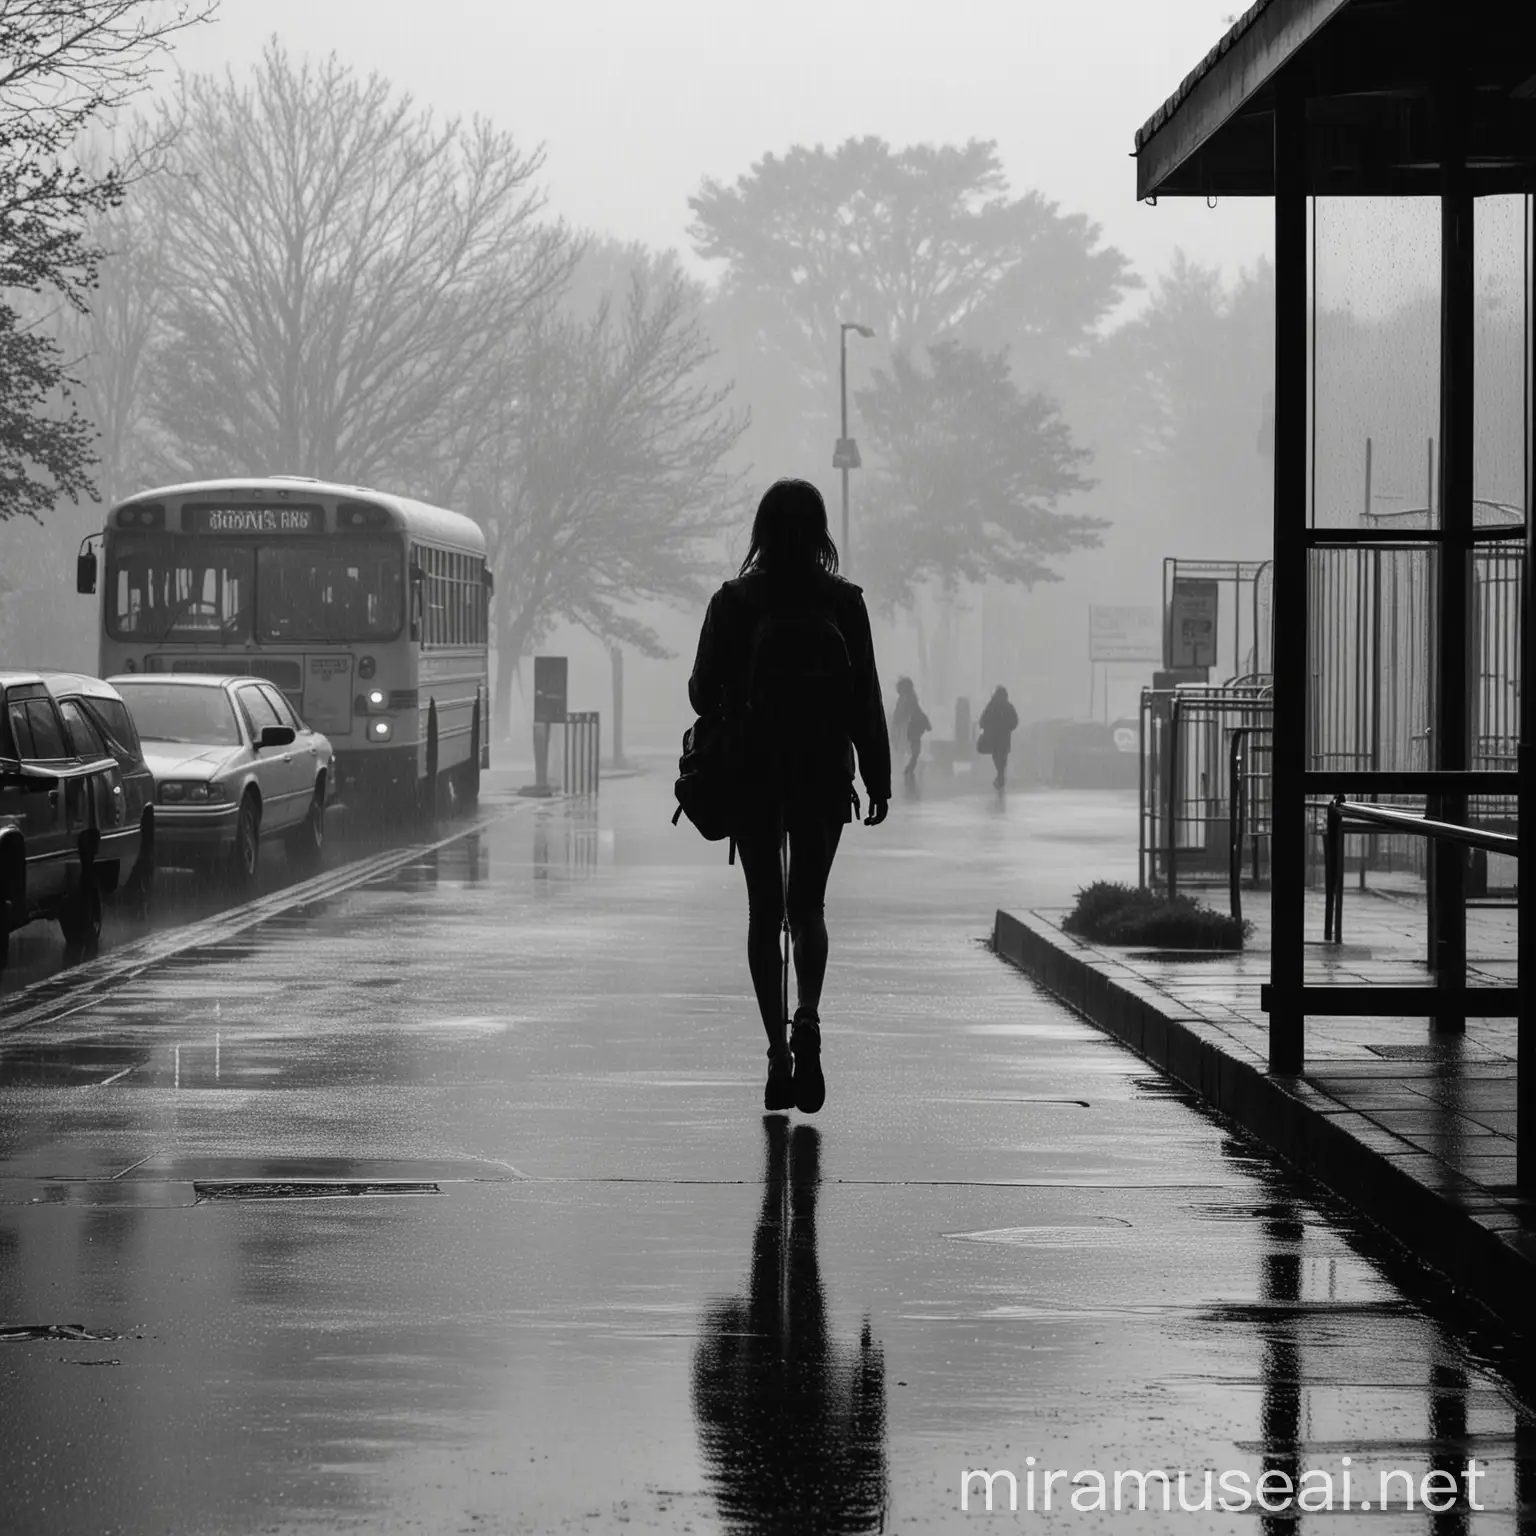 imagen de una silueta de una niña saliendo de su colegio caminando hacia una parada de bus en un dia lluvioso